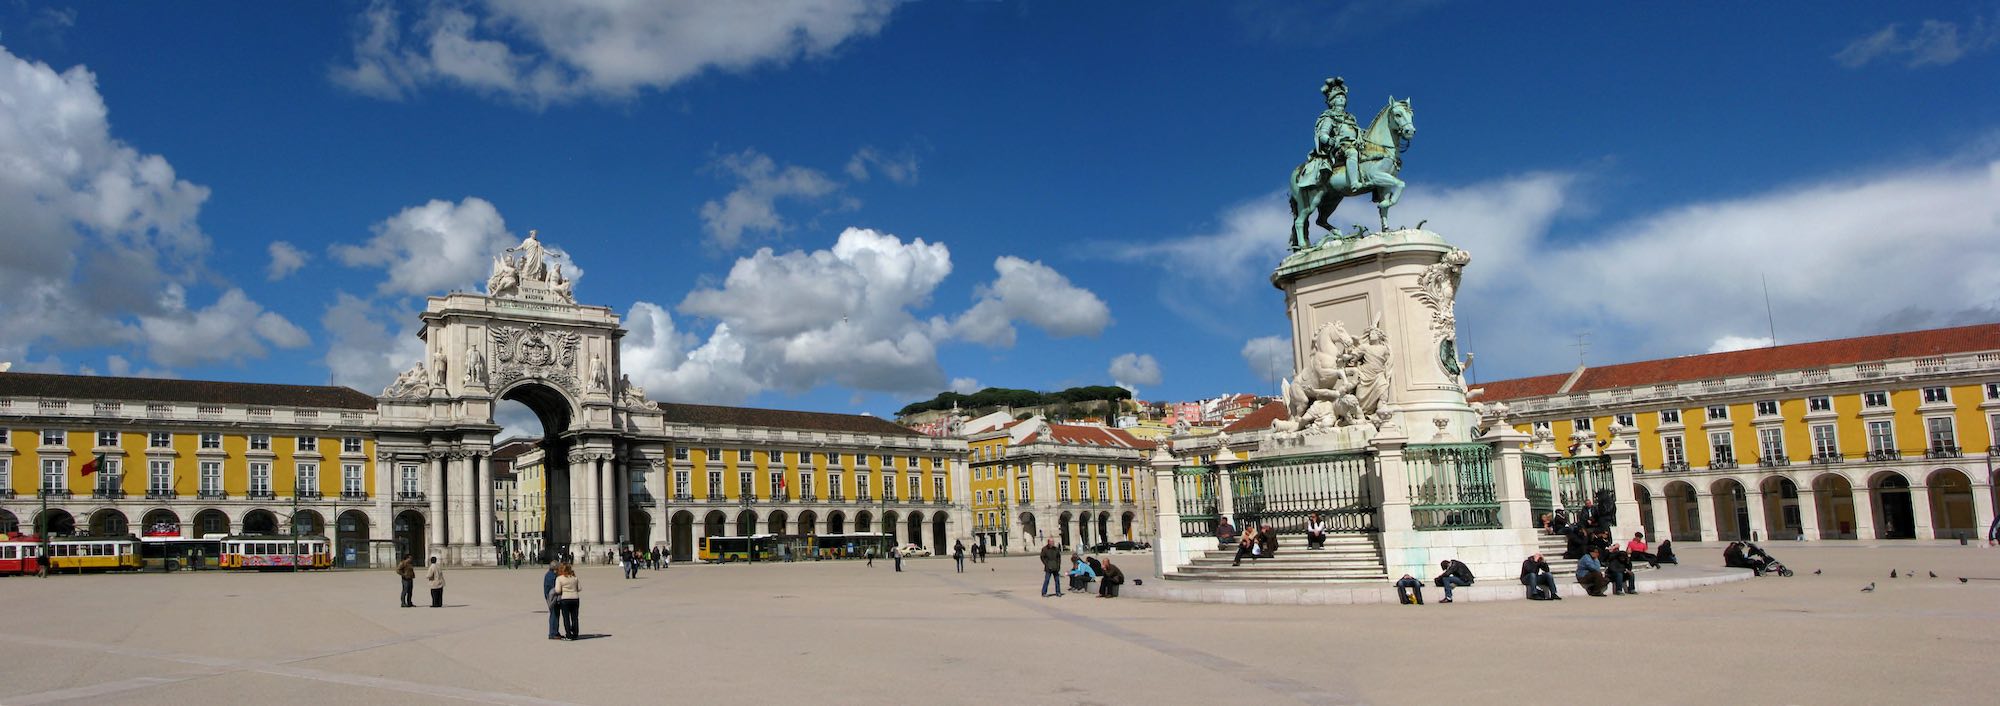 Portugal Lissabon "Praça do Comércio" Copyright © AdobeStock 31254644 Luis Elvas